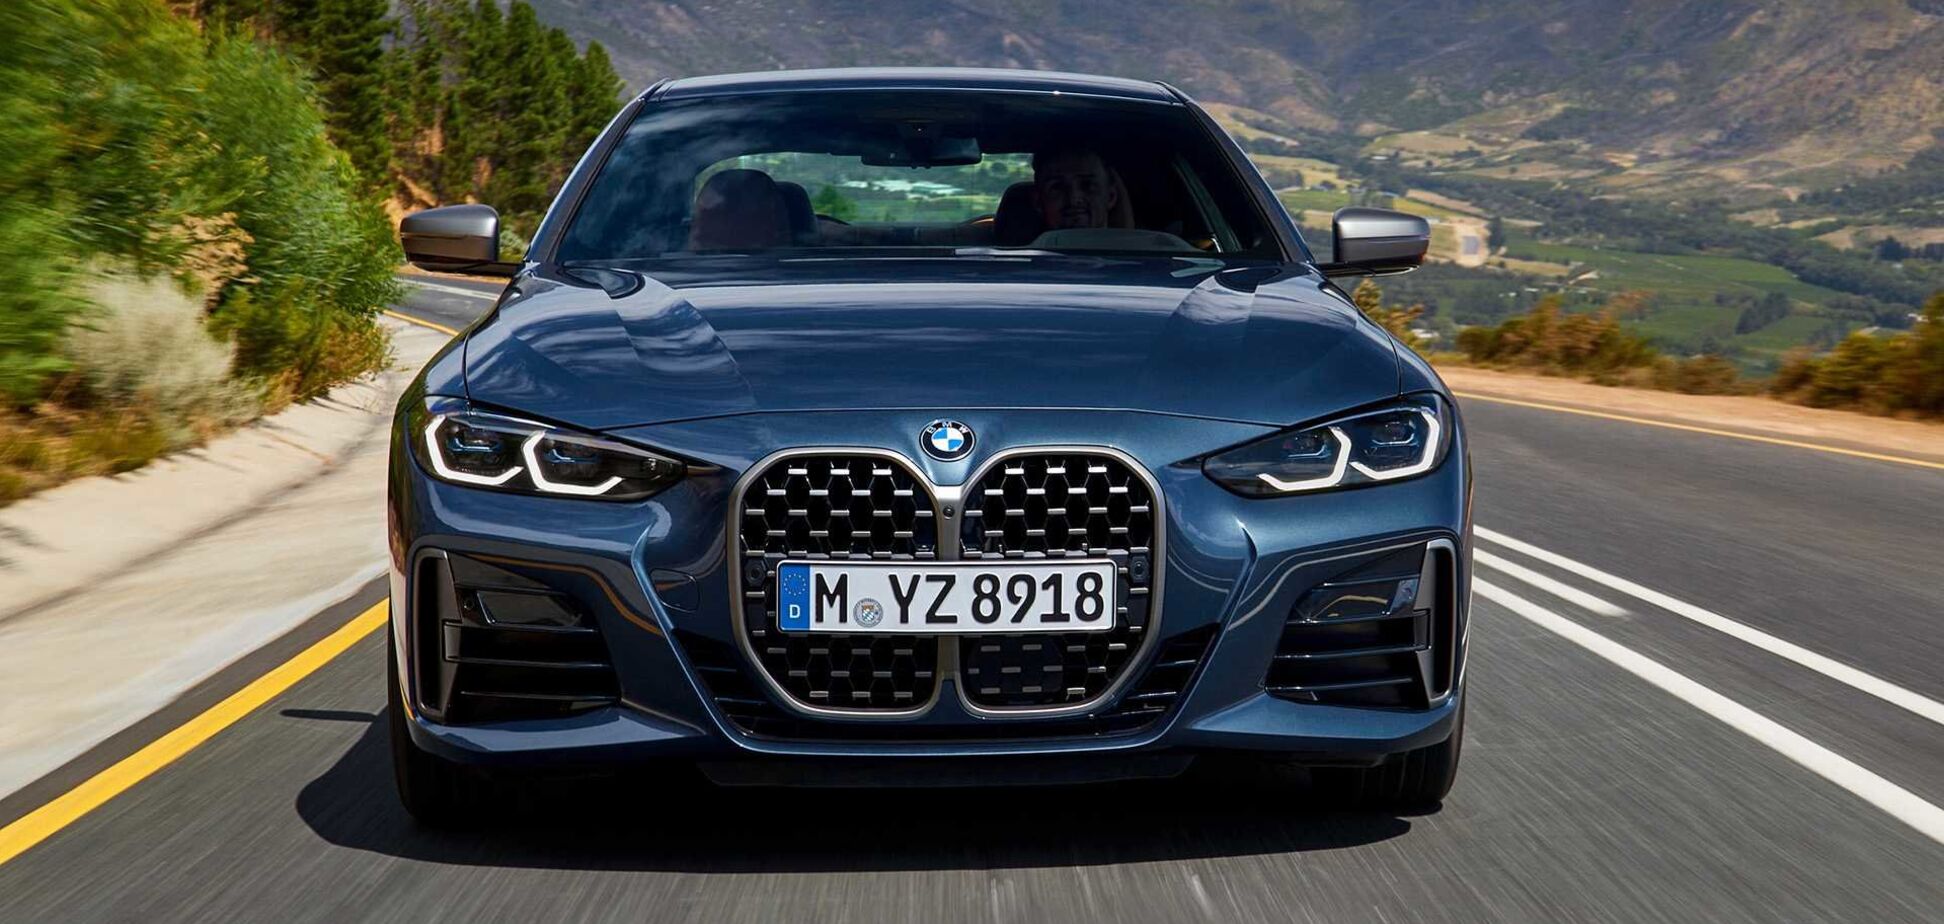 Нова модель BMW шокувала нереально величезними ніздрями